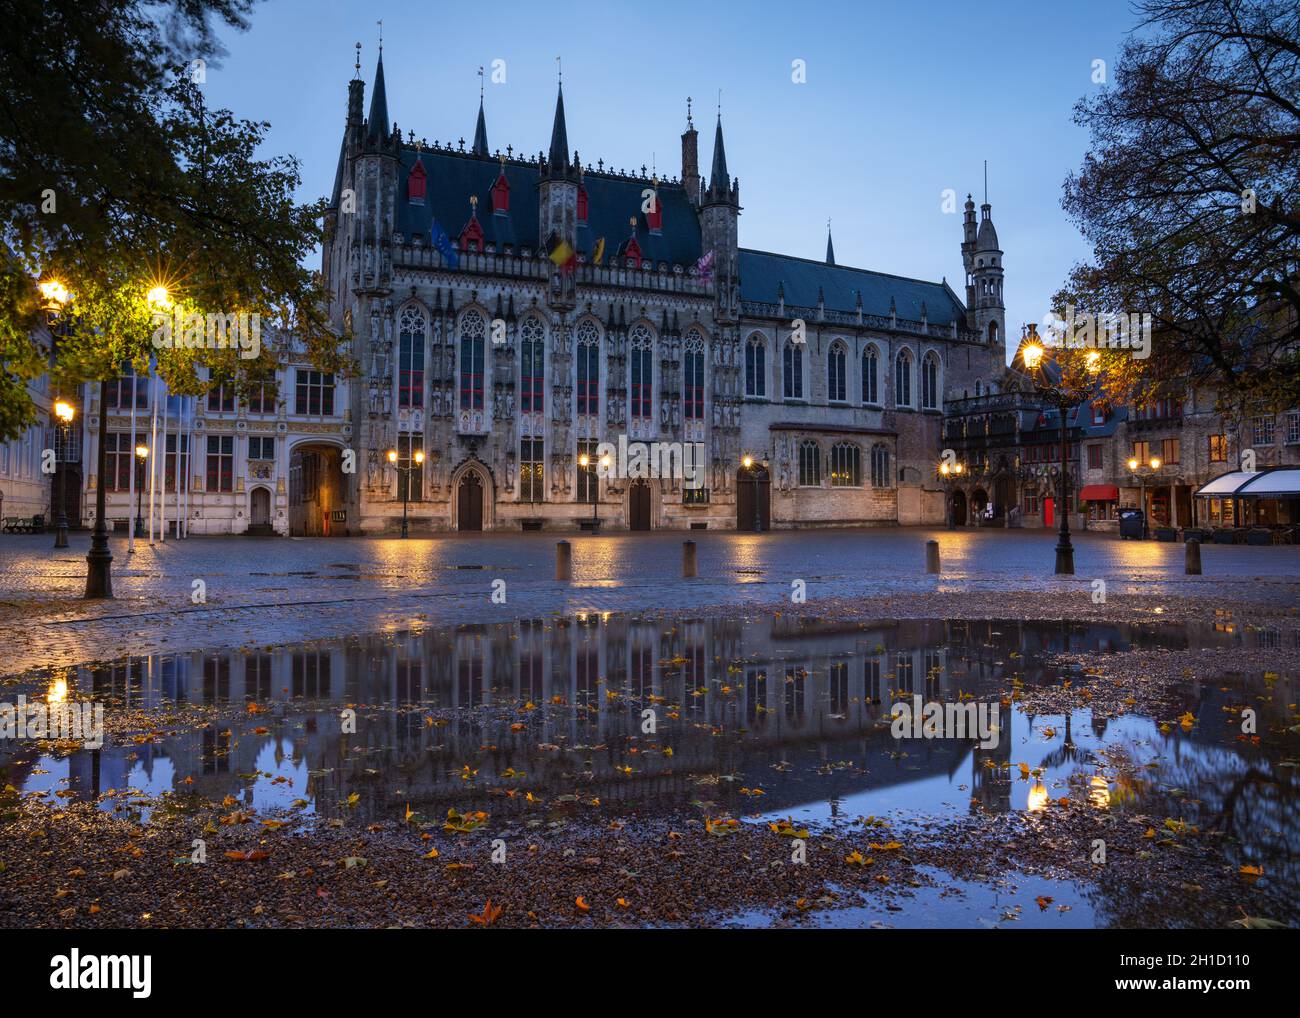 Bruges, BELGIQUE - 2 NOVEMBRE 2019 : image panoramique de la mairie historique à la veille, bâtiments historiques de Bruges le 2 novembre 2019 en Belgique Banque D'Images